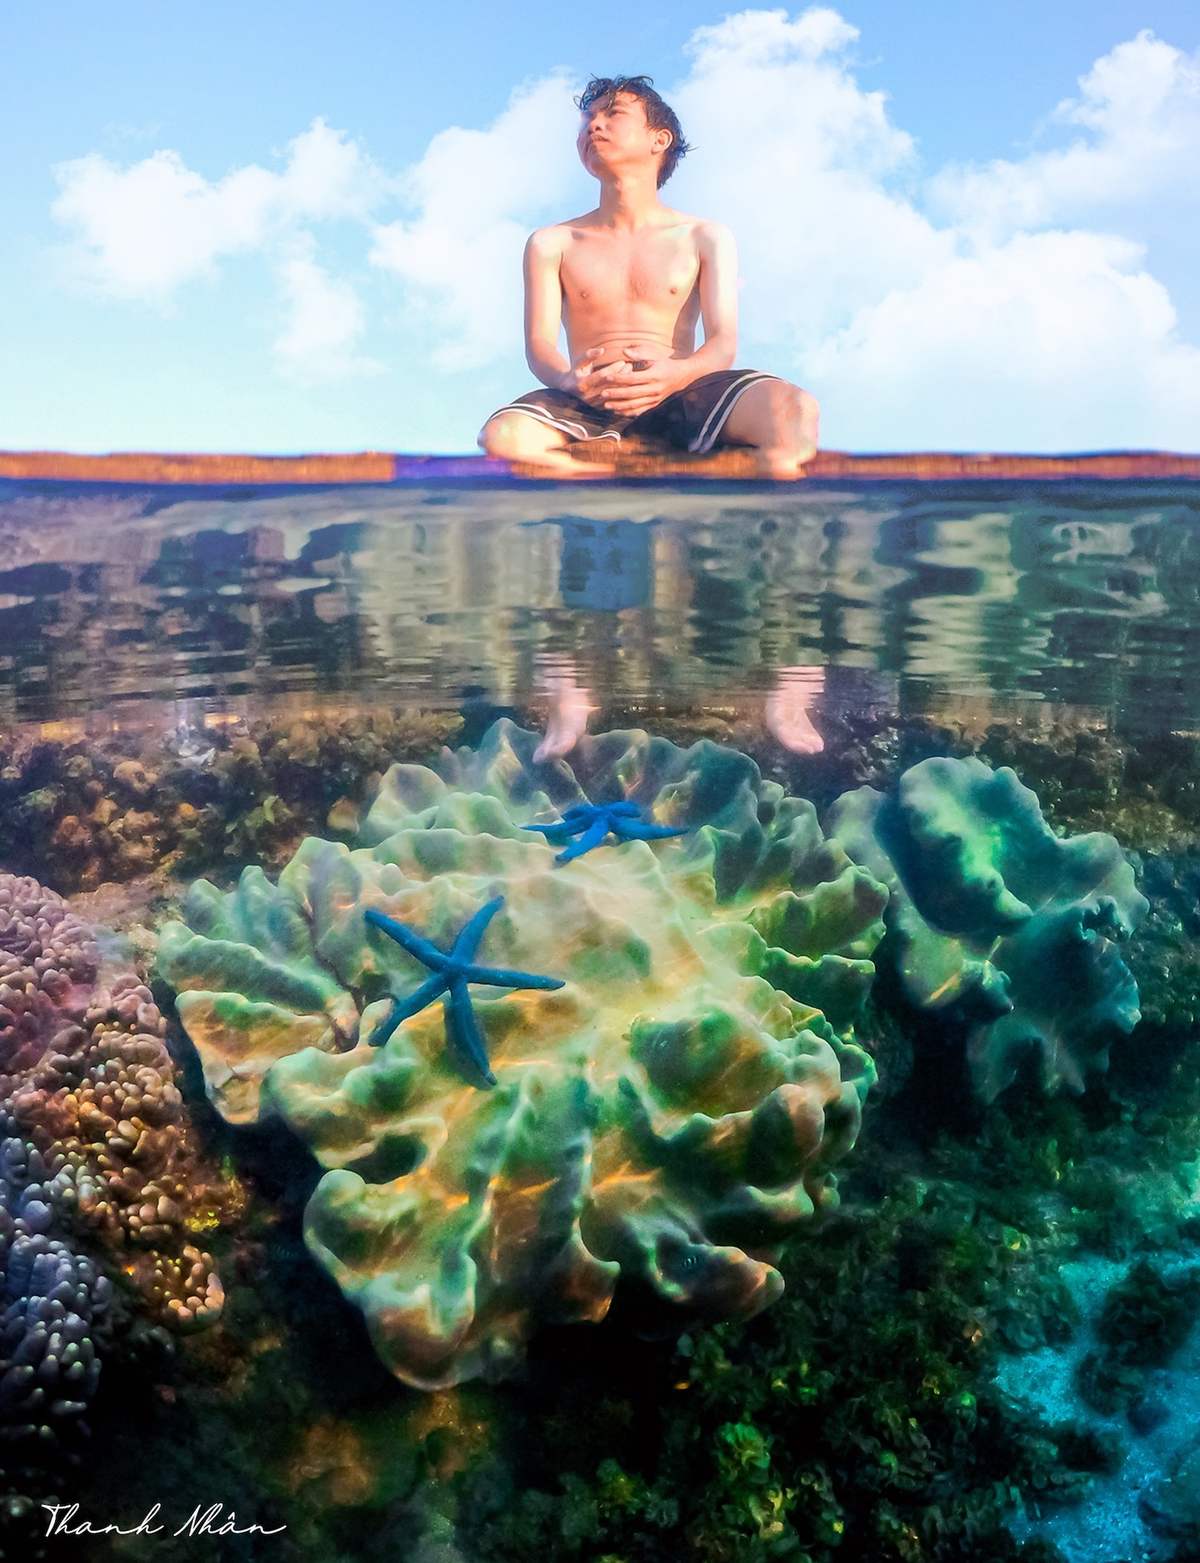 Phải cảm ơn bộ ảnh tuyệt vời của chàng trai 9x, giúp bạn ngắm san hô Phú Yên đẹp mê mẩn, lung linh sắc màu 5